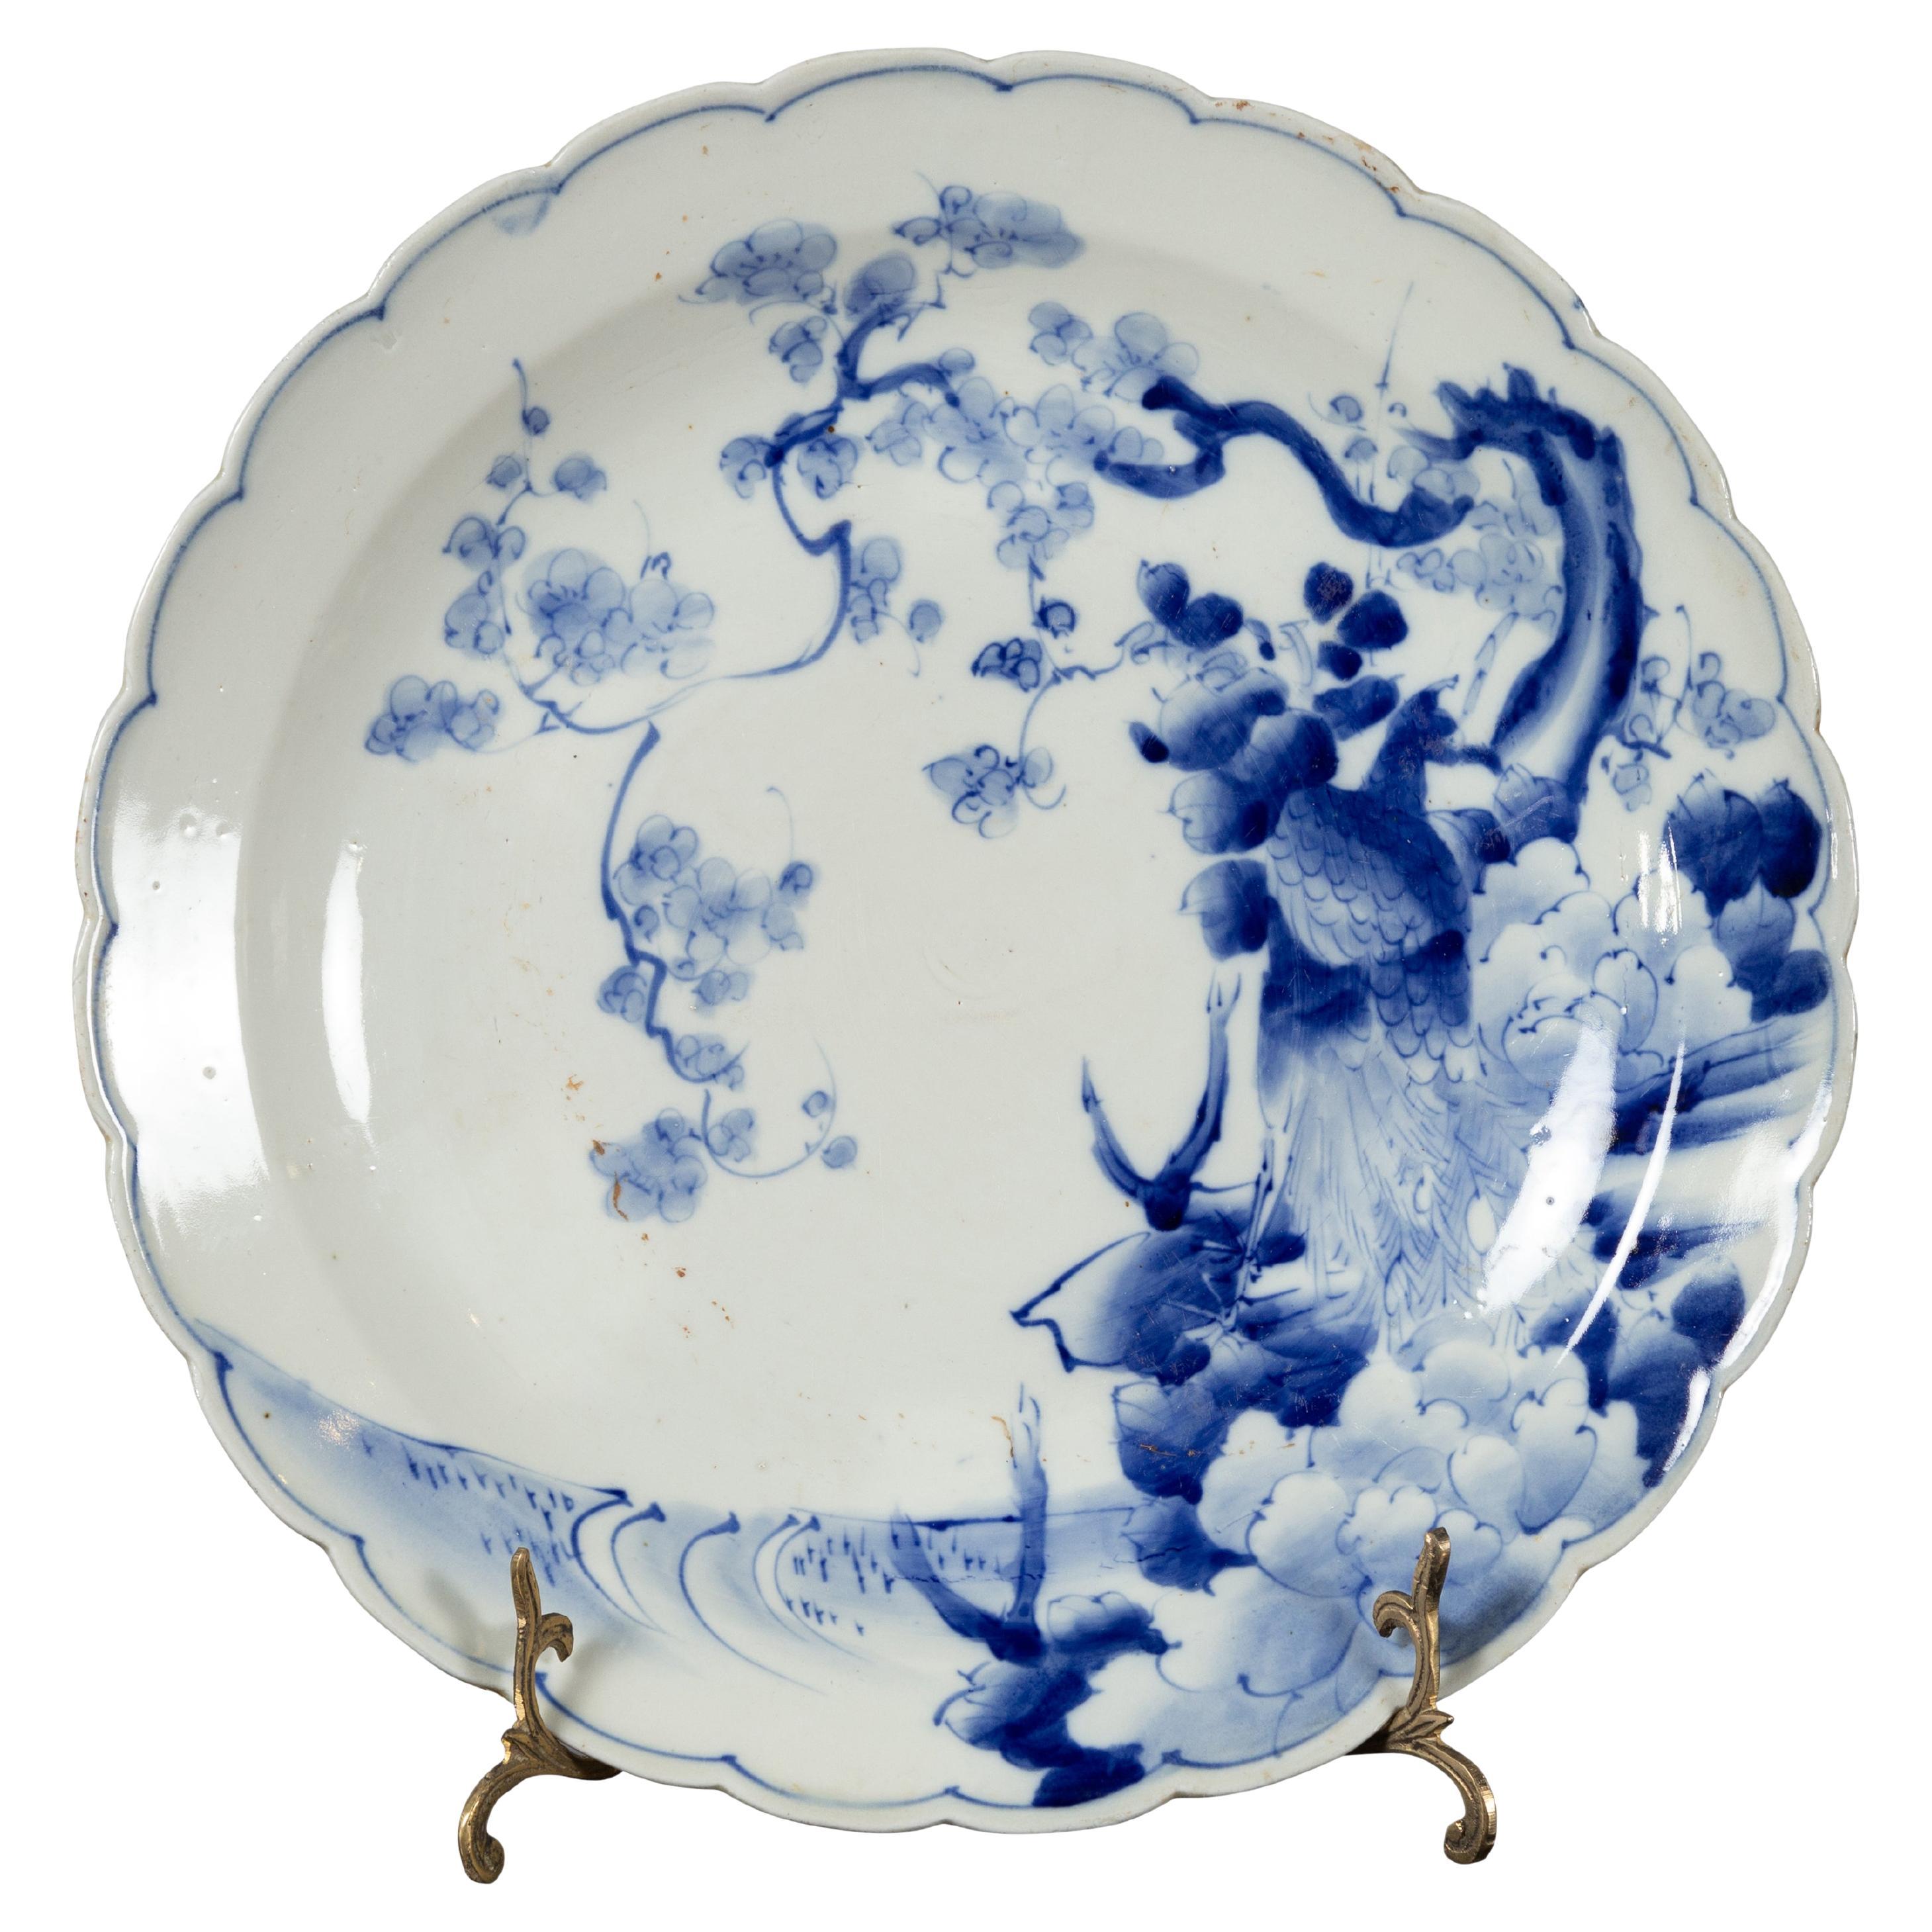 Assiette en porcelaine japonaise du 19ème siècle avec décor bleu et blanc peint à la main